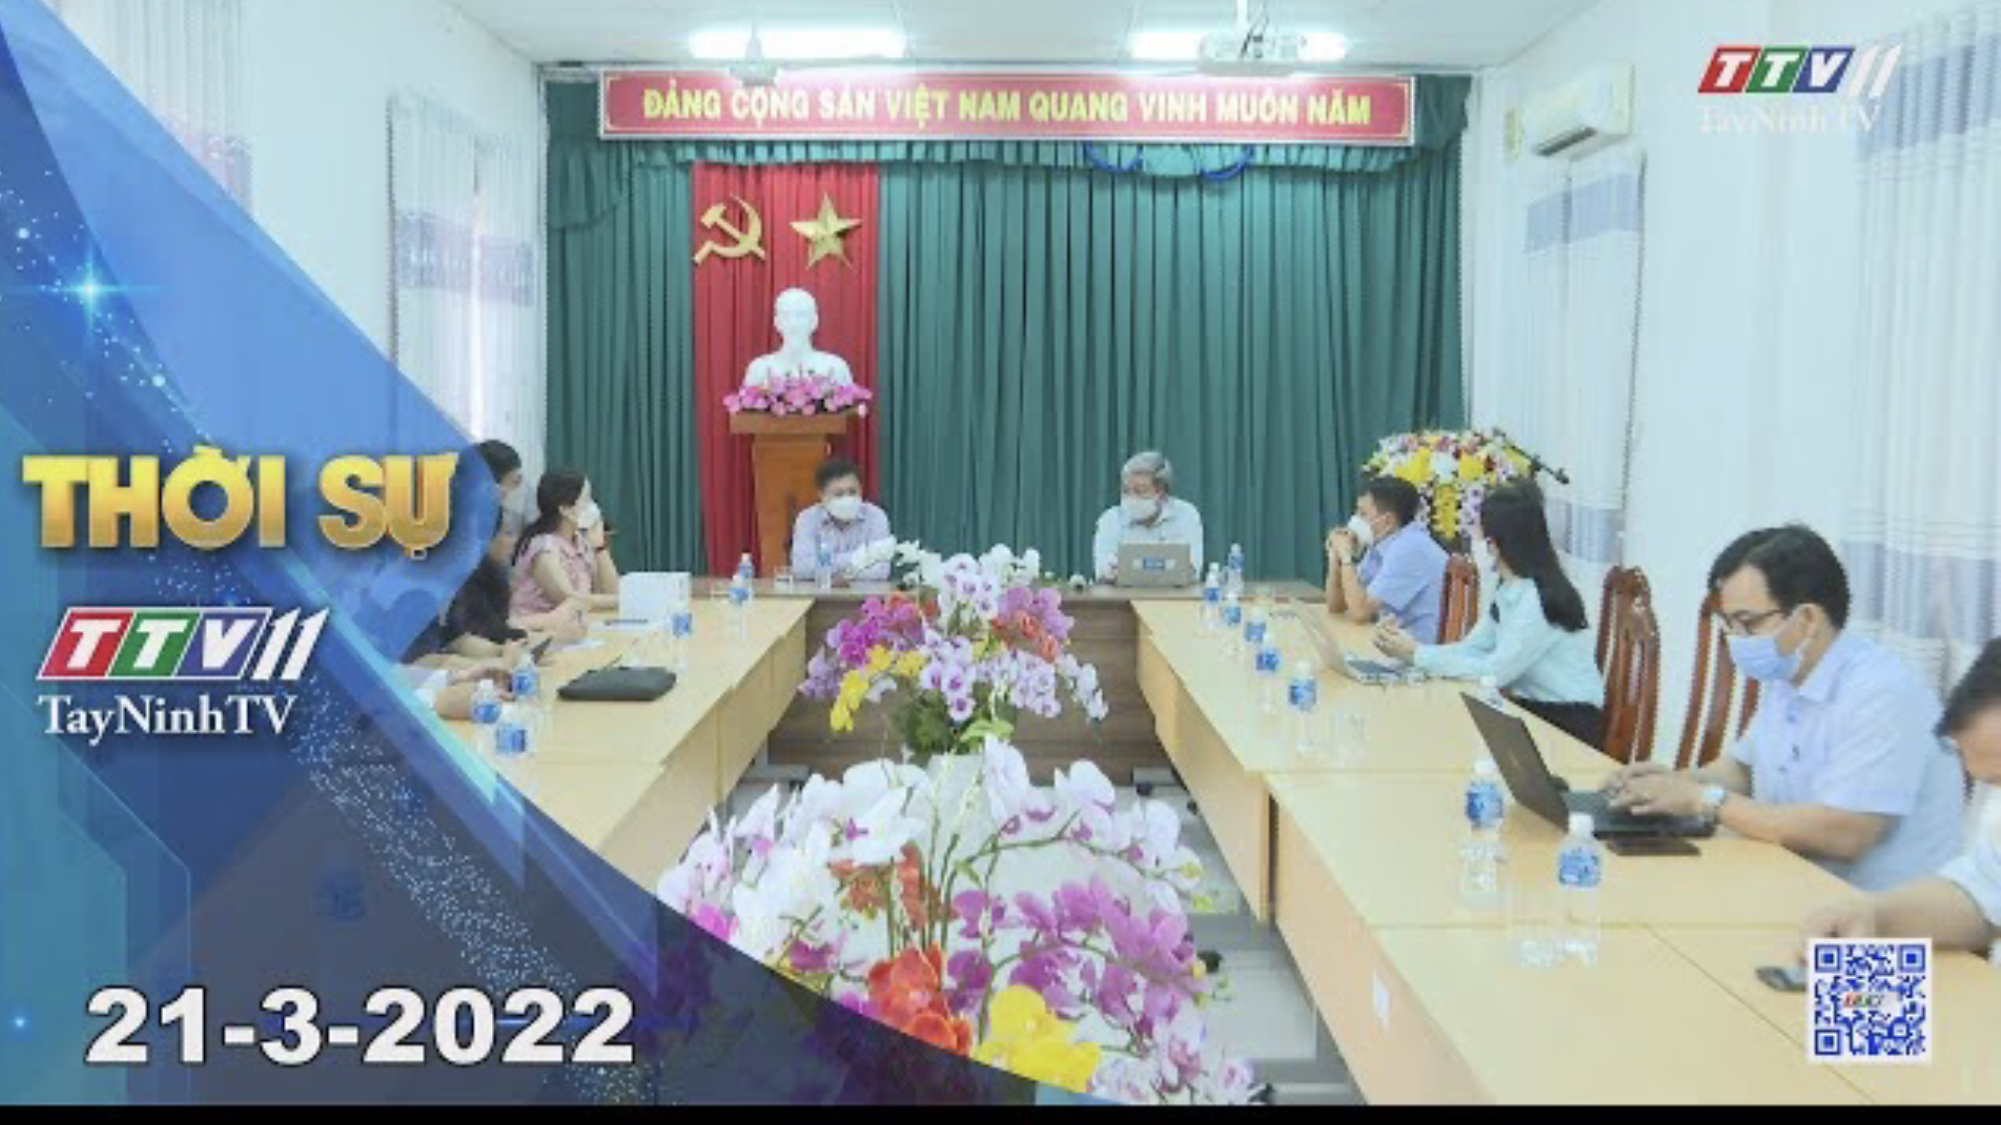 Thời sự Tây Ninh 21-3-2022 | Tin tức hôm nay | TayNinhTV